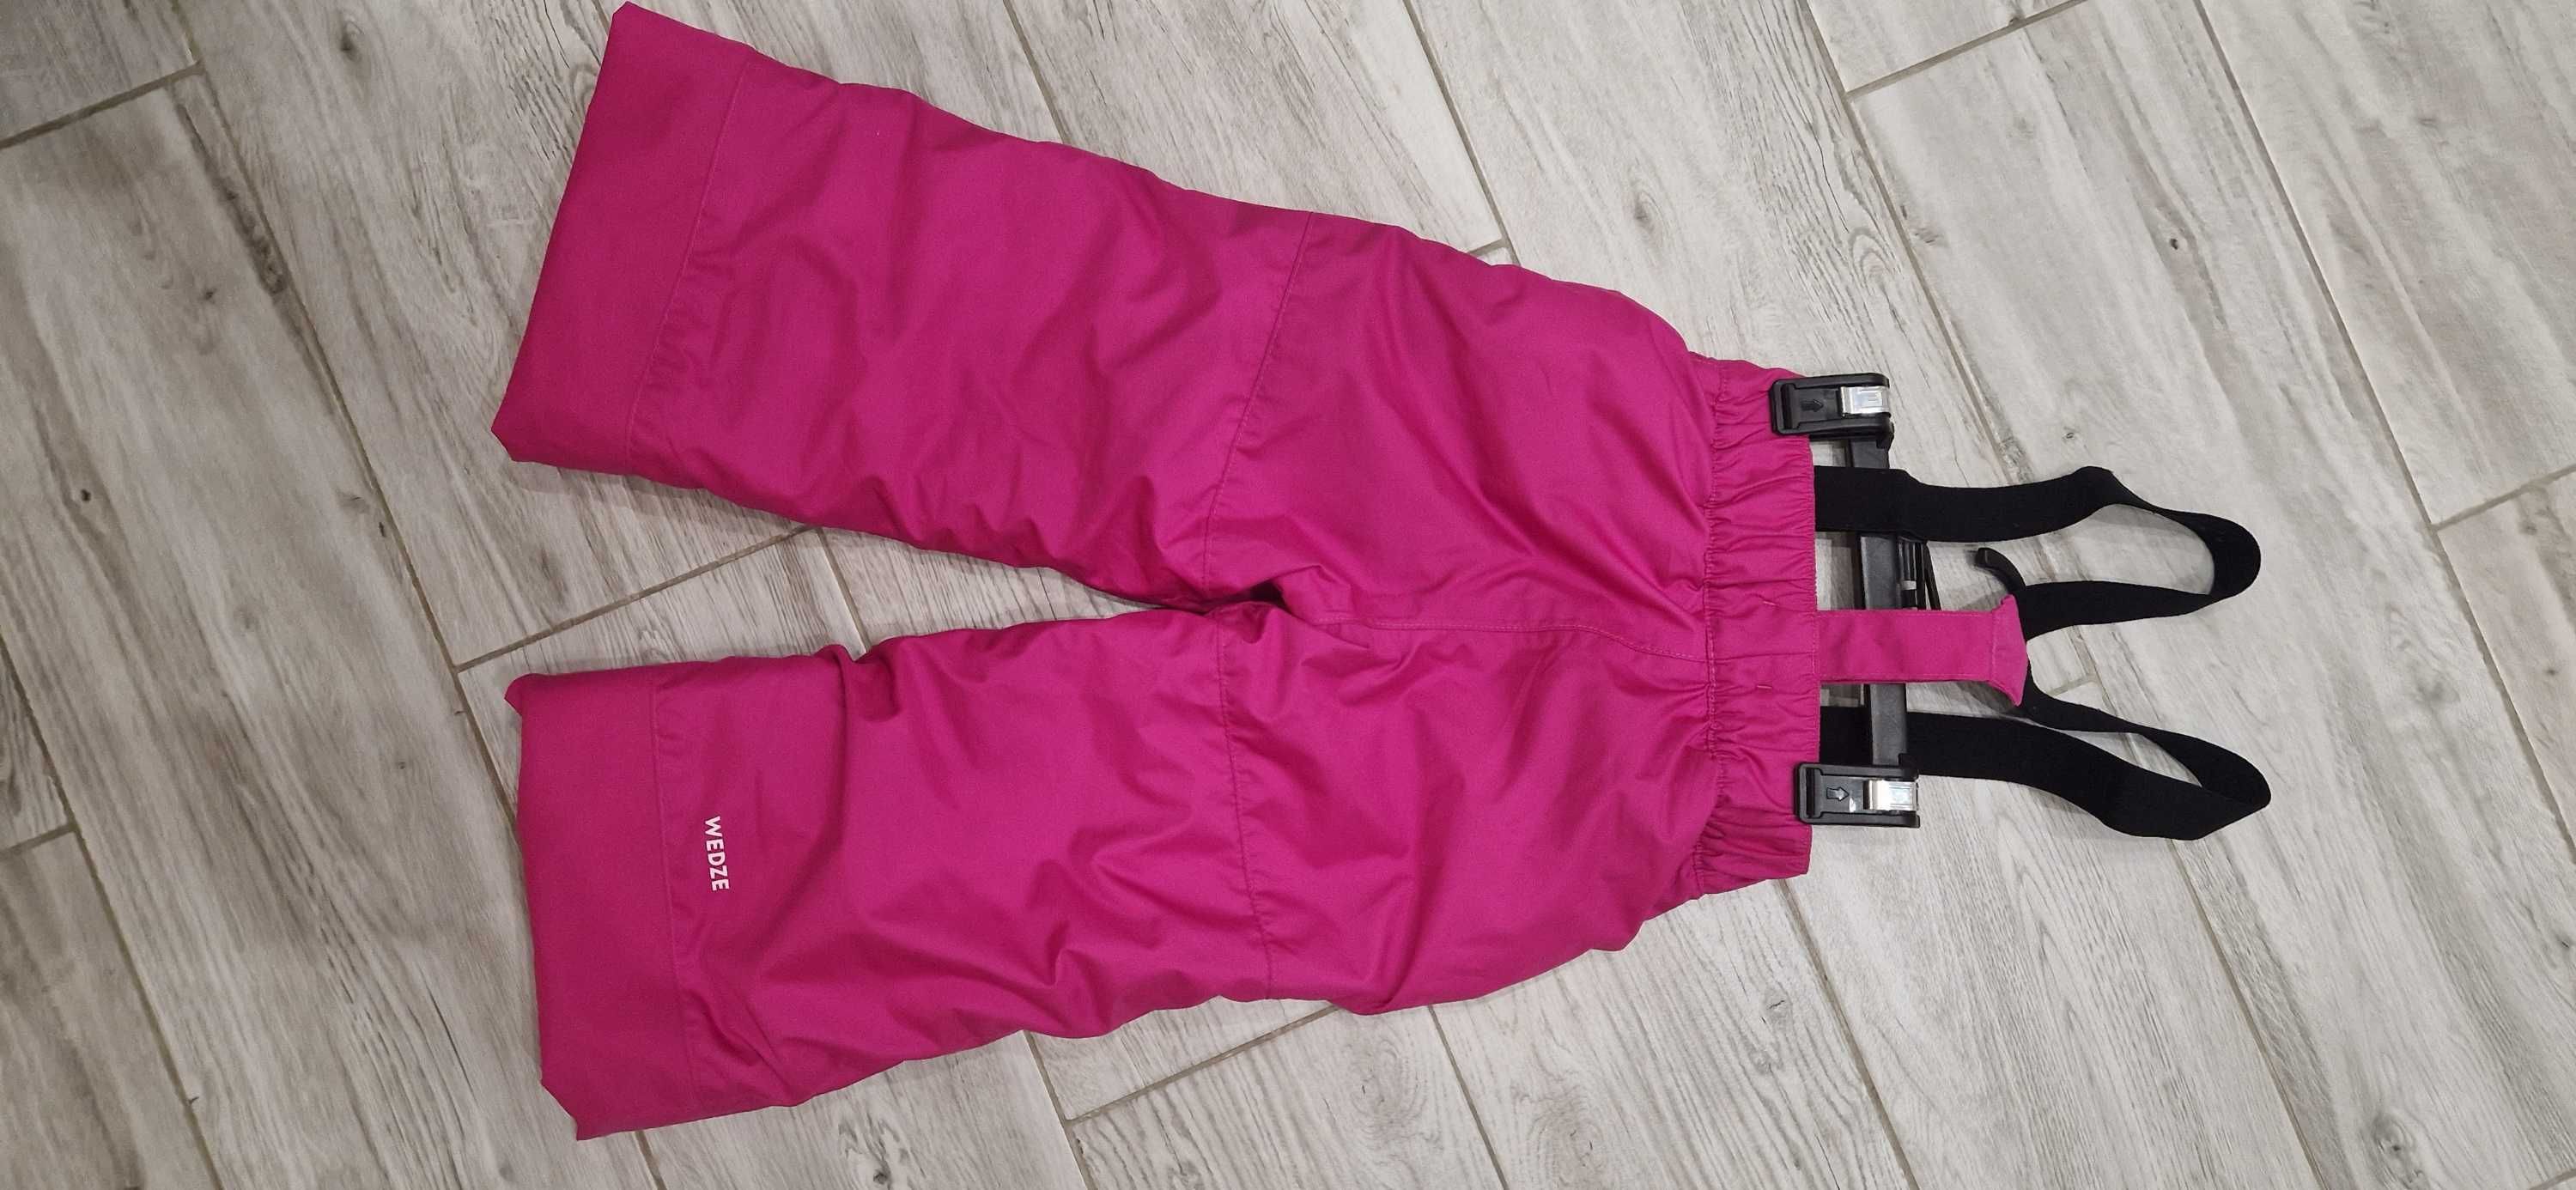 Spodnie narciarskie dla dziewczynki ( 3,4 lata )Dechatlon-stan idealny